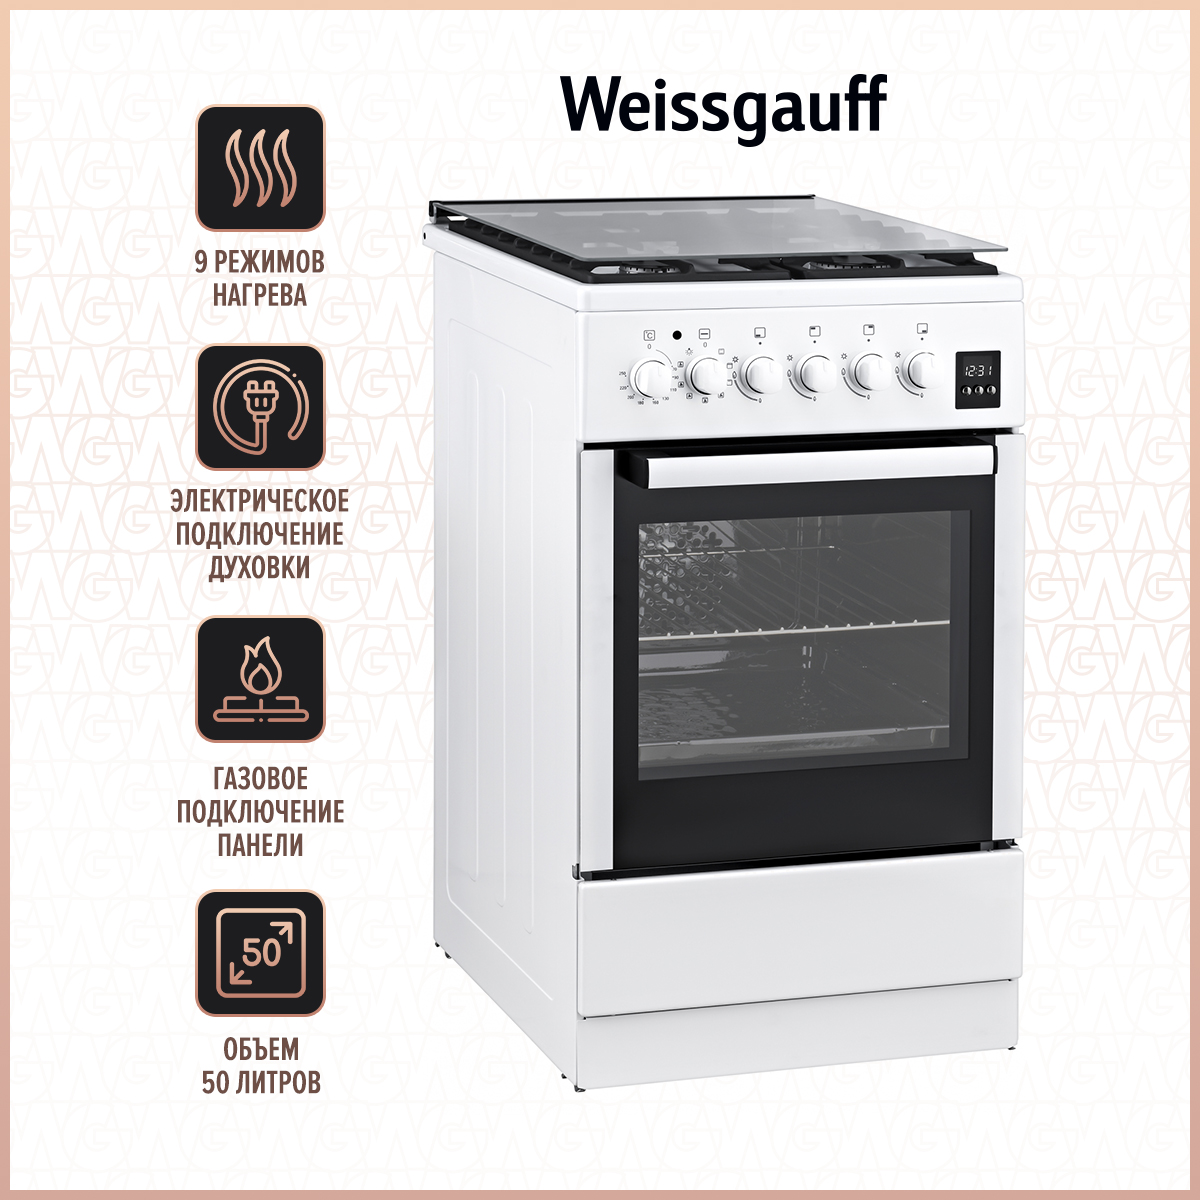 Комбинированная плита Weissgauff WCS K2K59 WGE White комбинированная плита weissgauff wcs k2k59 wge white